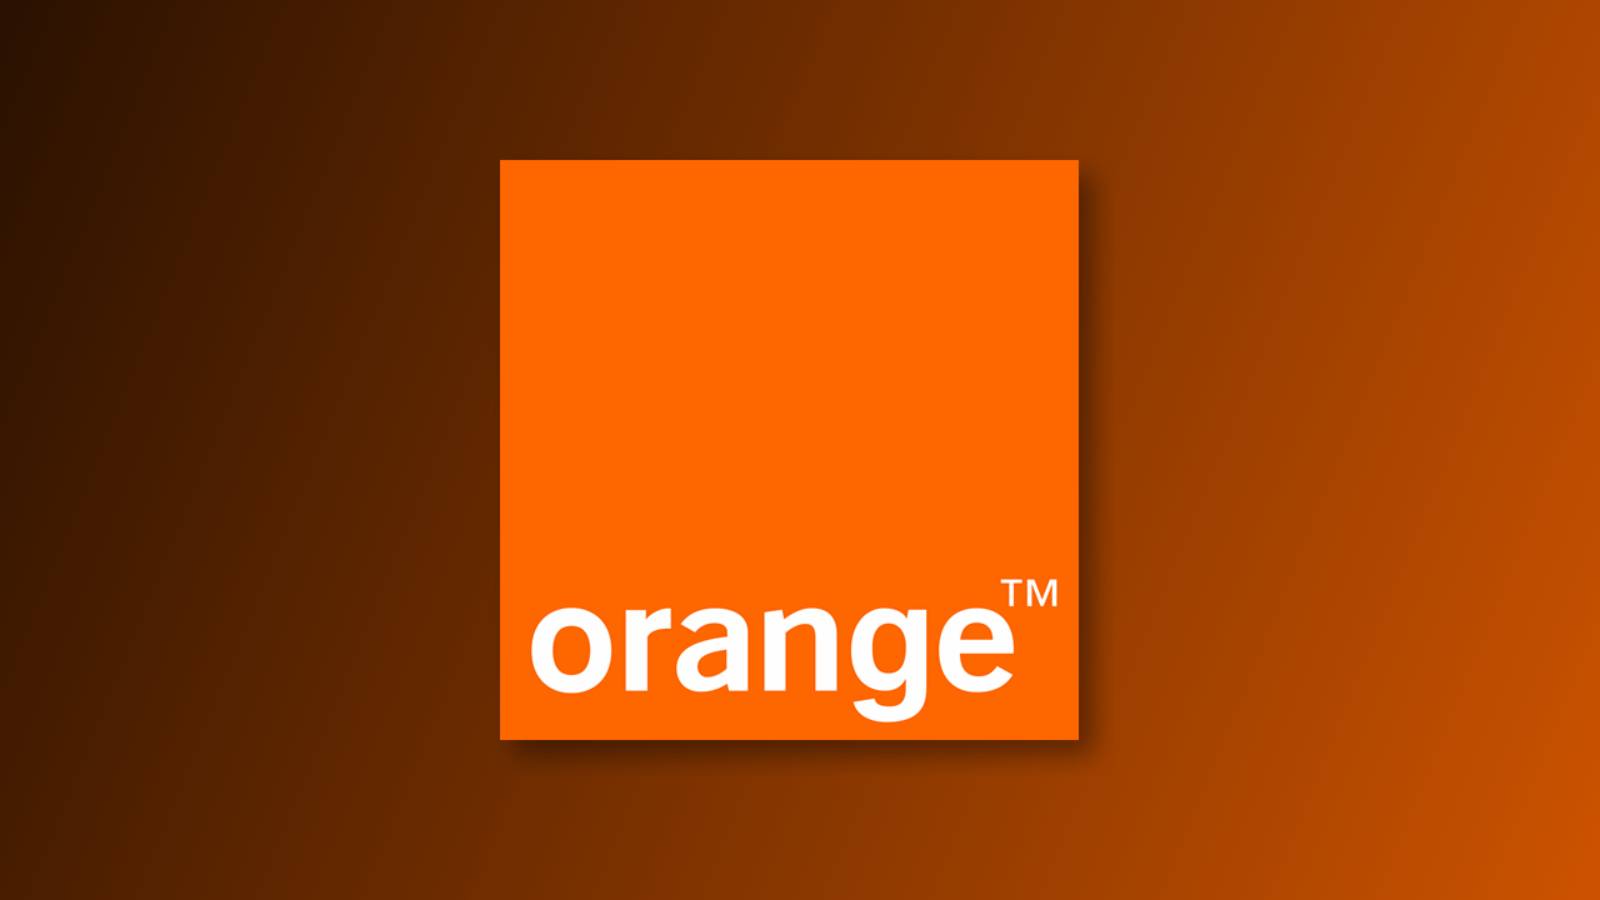 Orange: De Craciun iti poti Face un Cadou Frumos cu un Telefon la REDUCERE